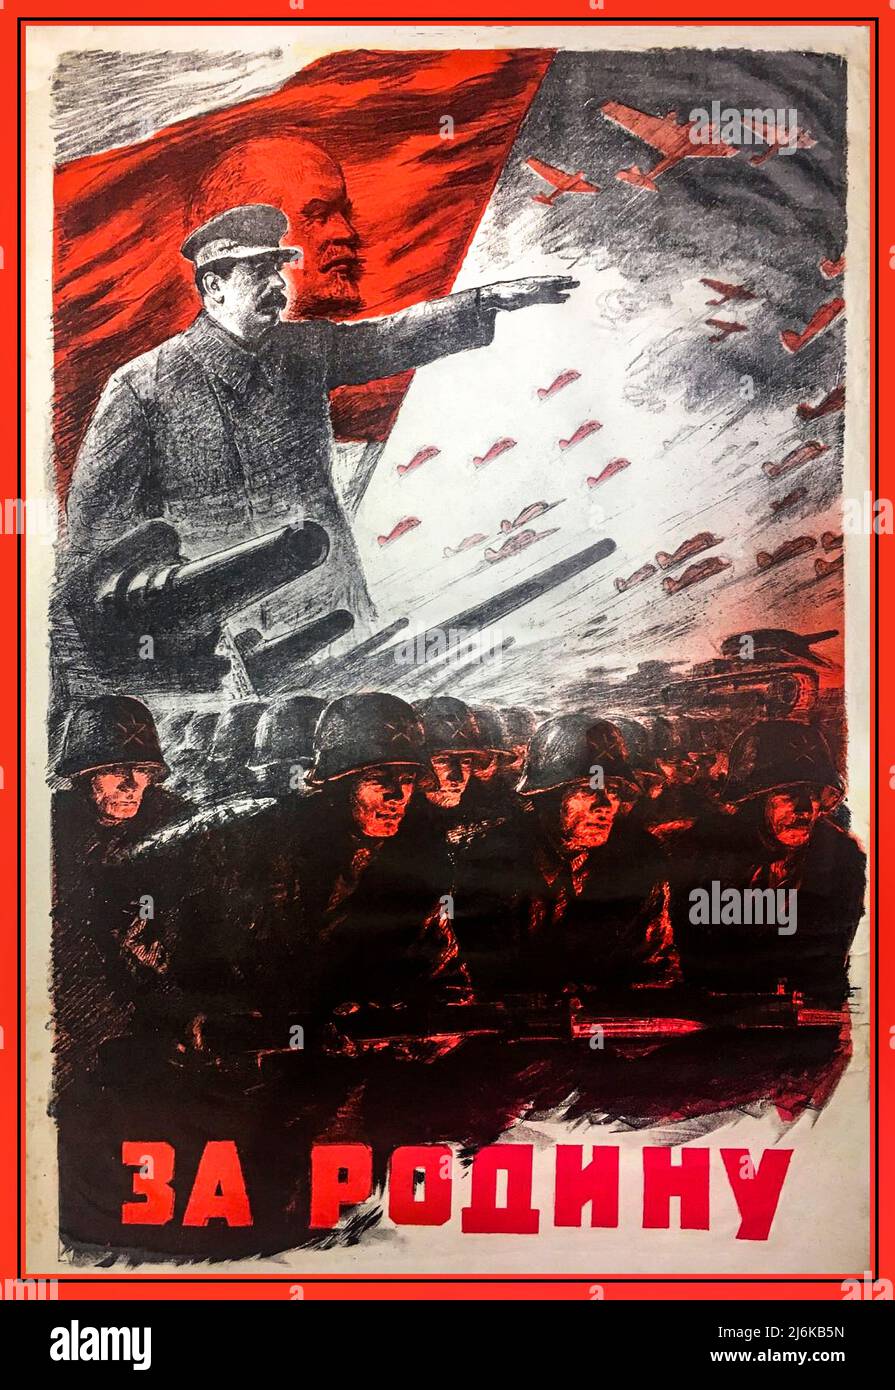 Staline 1940s Russie WW2 Poster de propagande avec Joseph Staline et Lénine sur le drapeau derrière, exhortant ses forces en avant. 'Pour la mère patrie' Seconde Guerre mondiale Russie Union soviétique URSS lutte contre l'agression de l'Allemagne nazie 1941 Banque D'Images